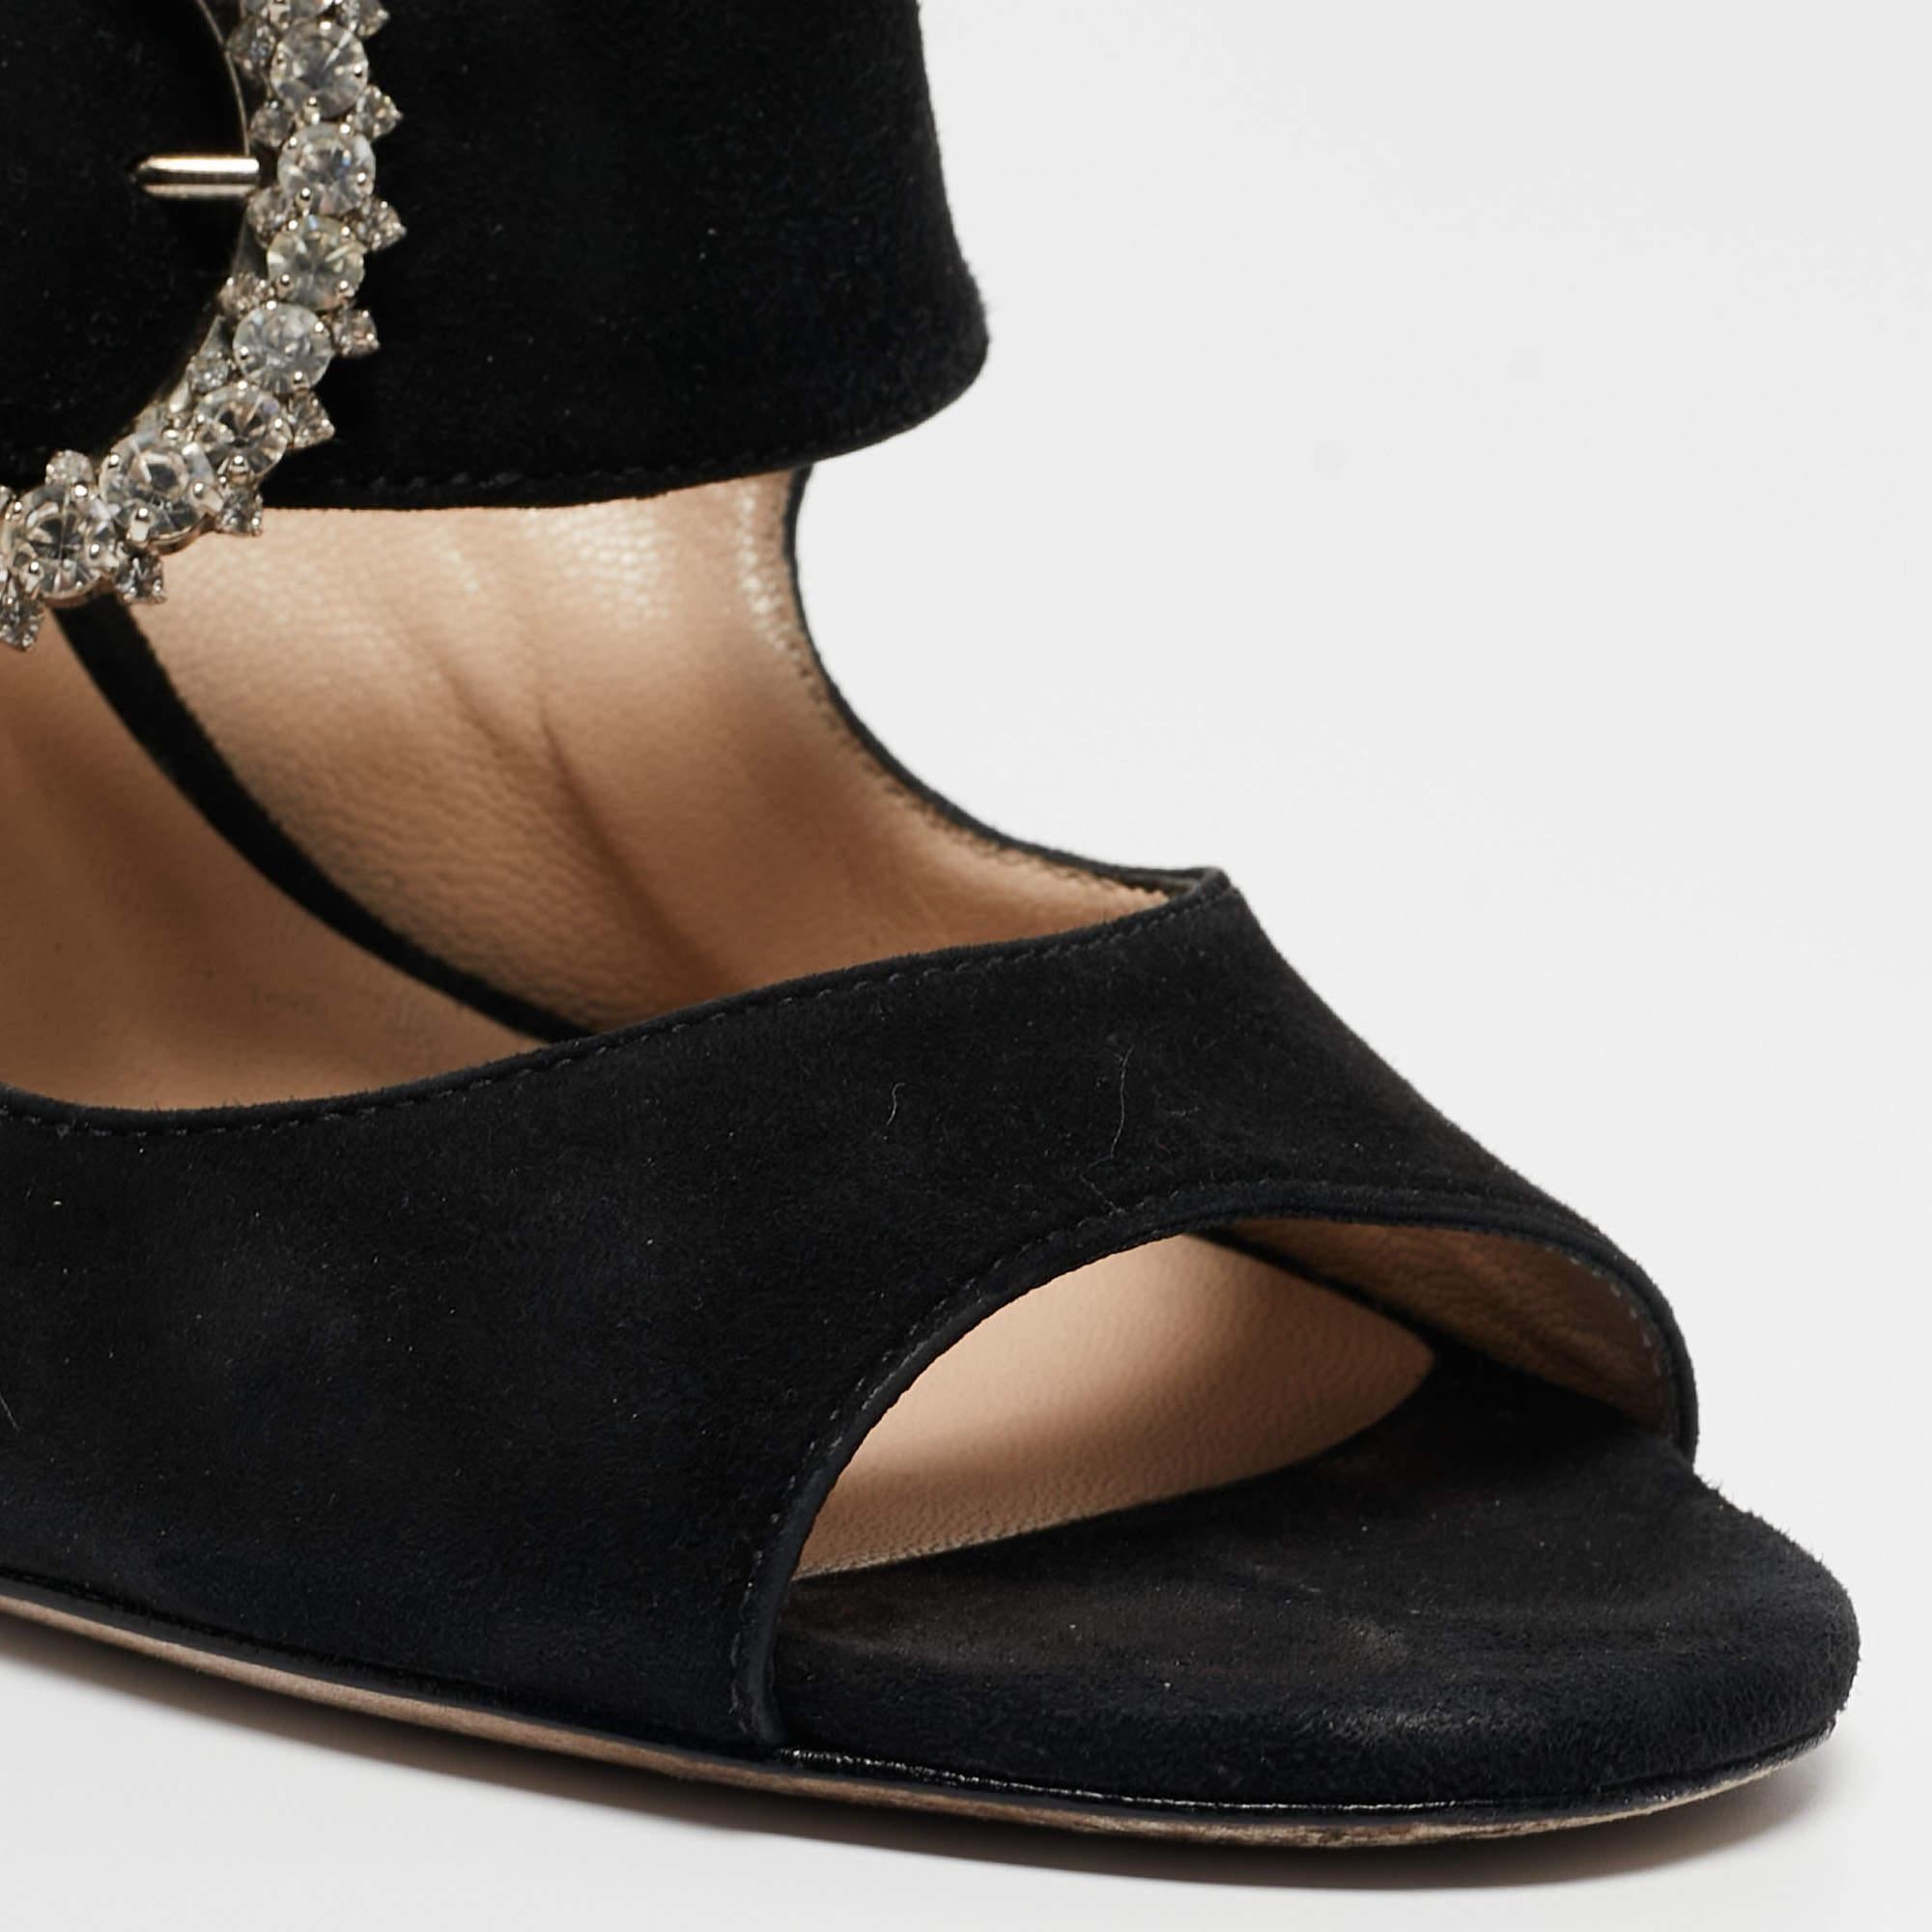 Jimmy Choo Black Suede Saf Crystal Embellished Buckle Slide Sandals Size 39.5 3